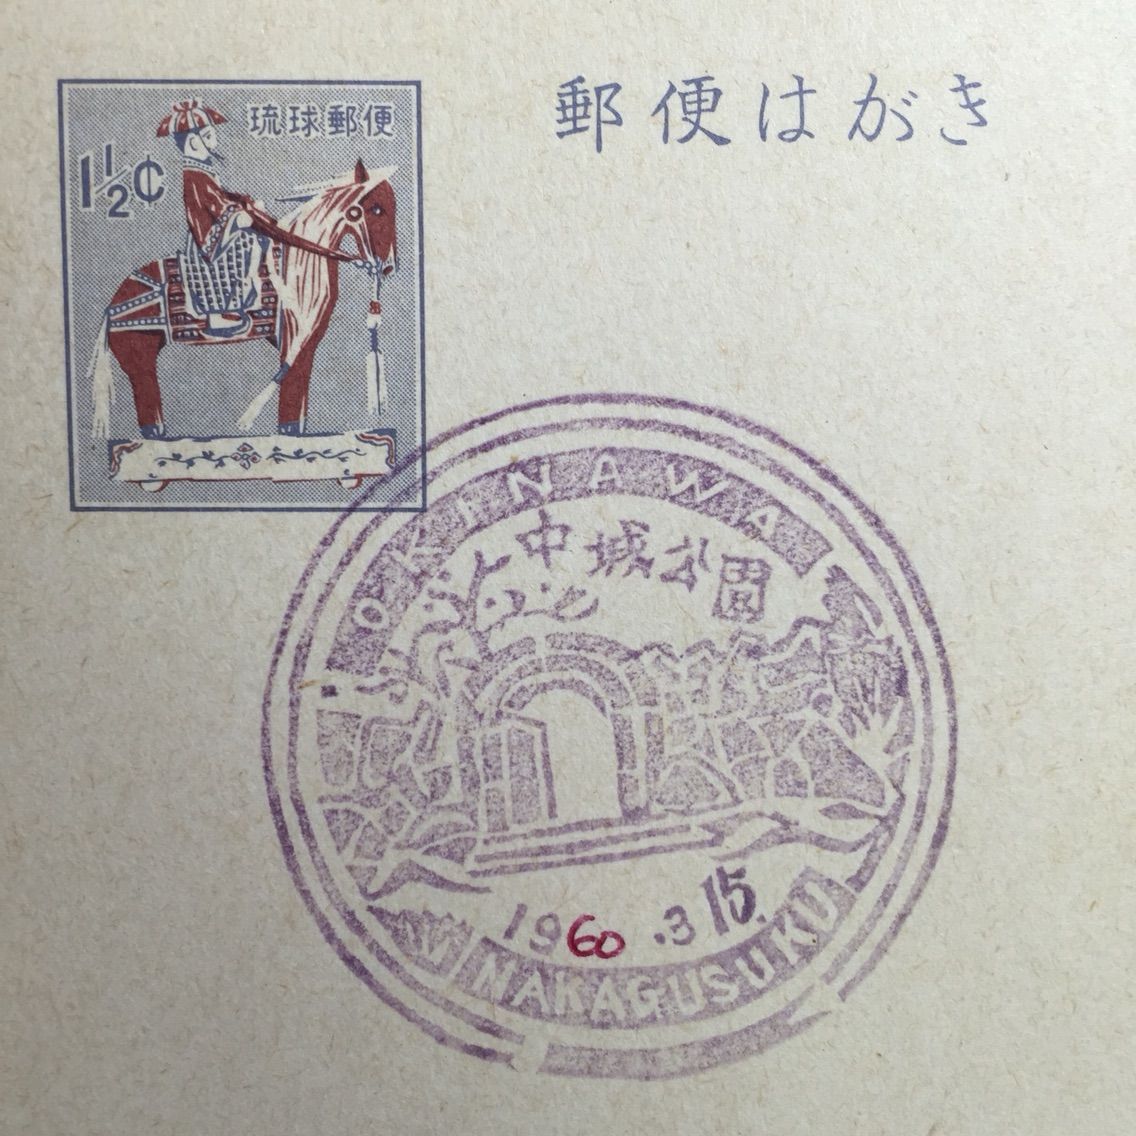 沖縄・琉球郵便時代最初期の風景印について : 元 熊元の風景印蒐集社